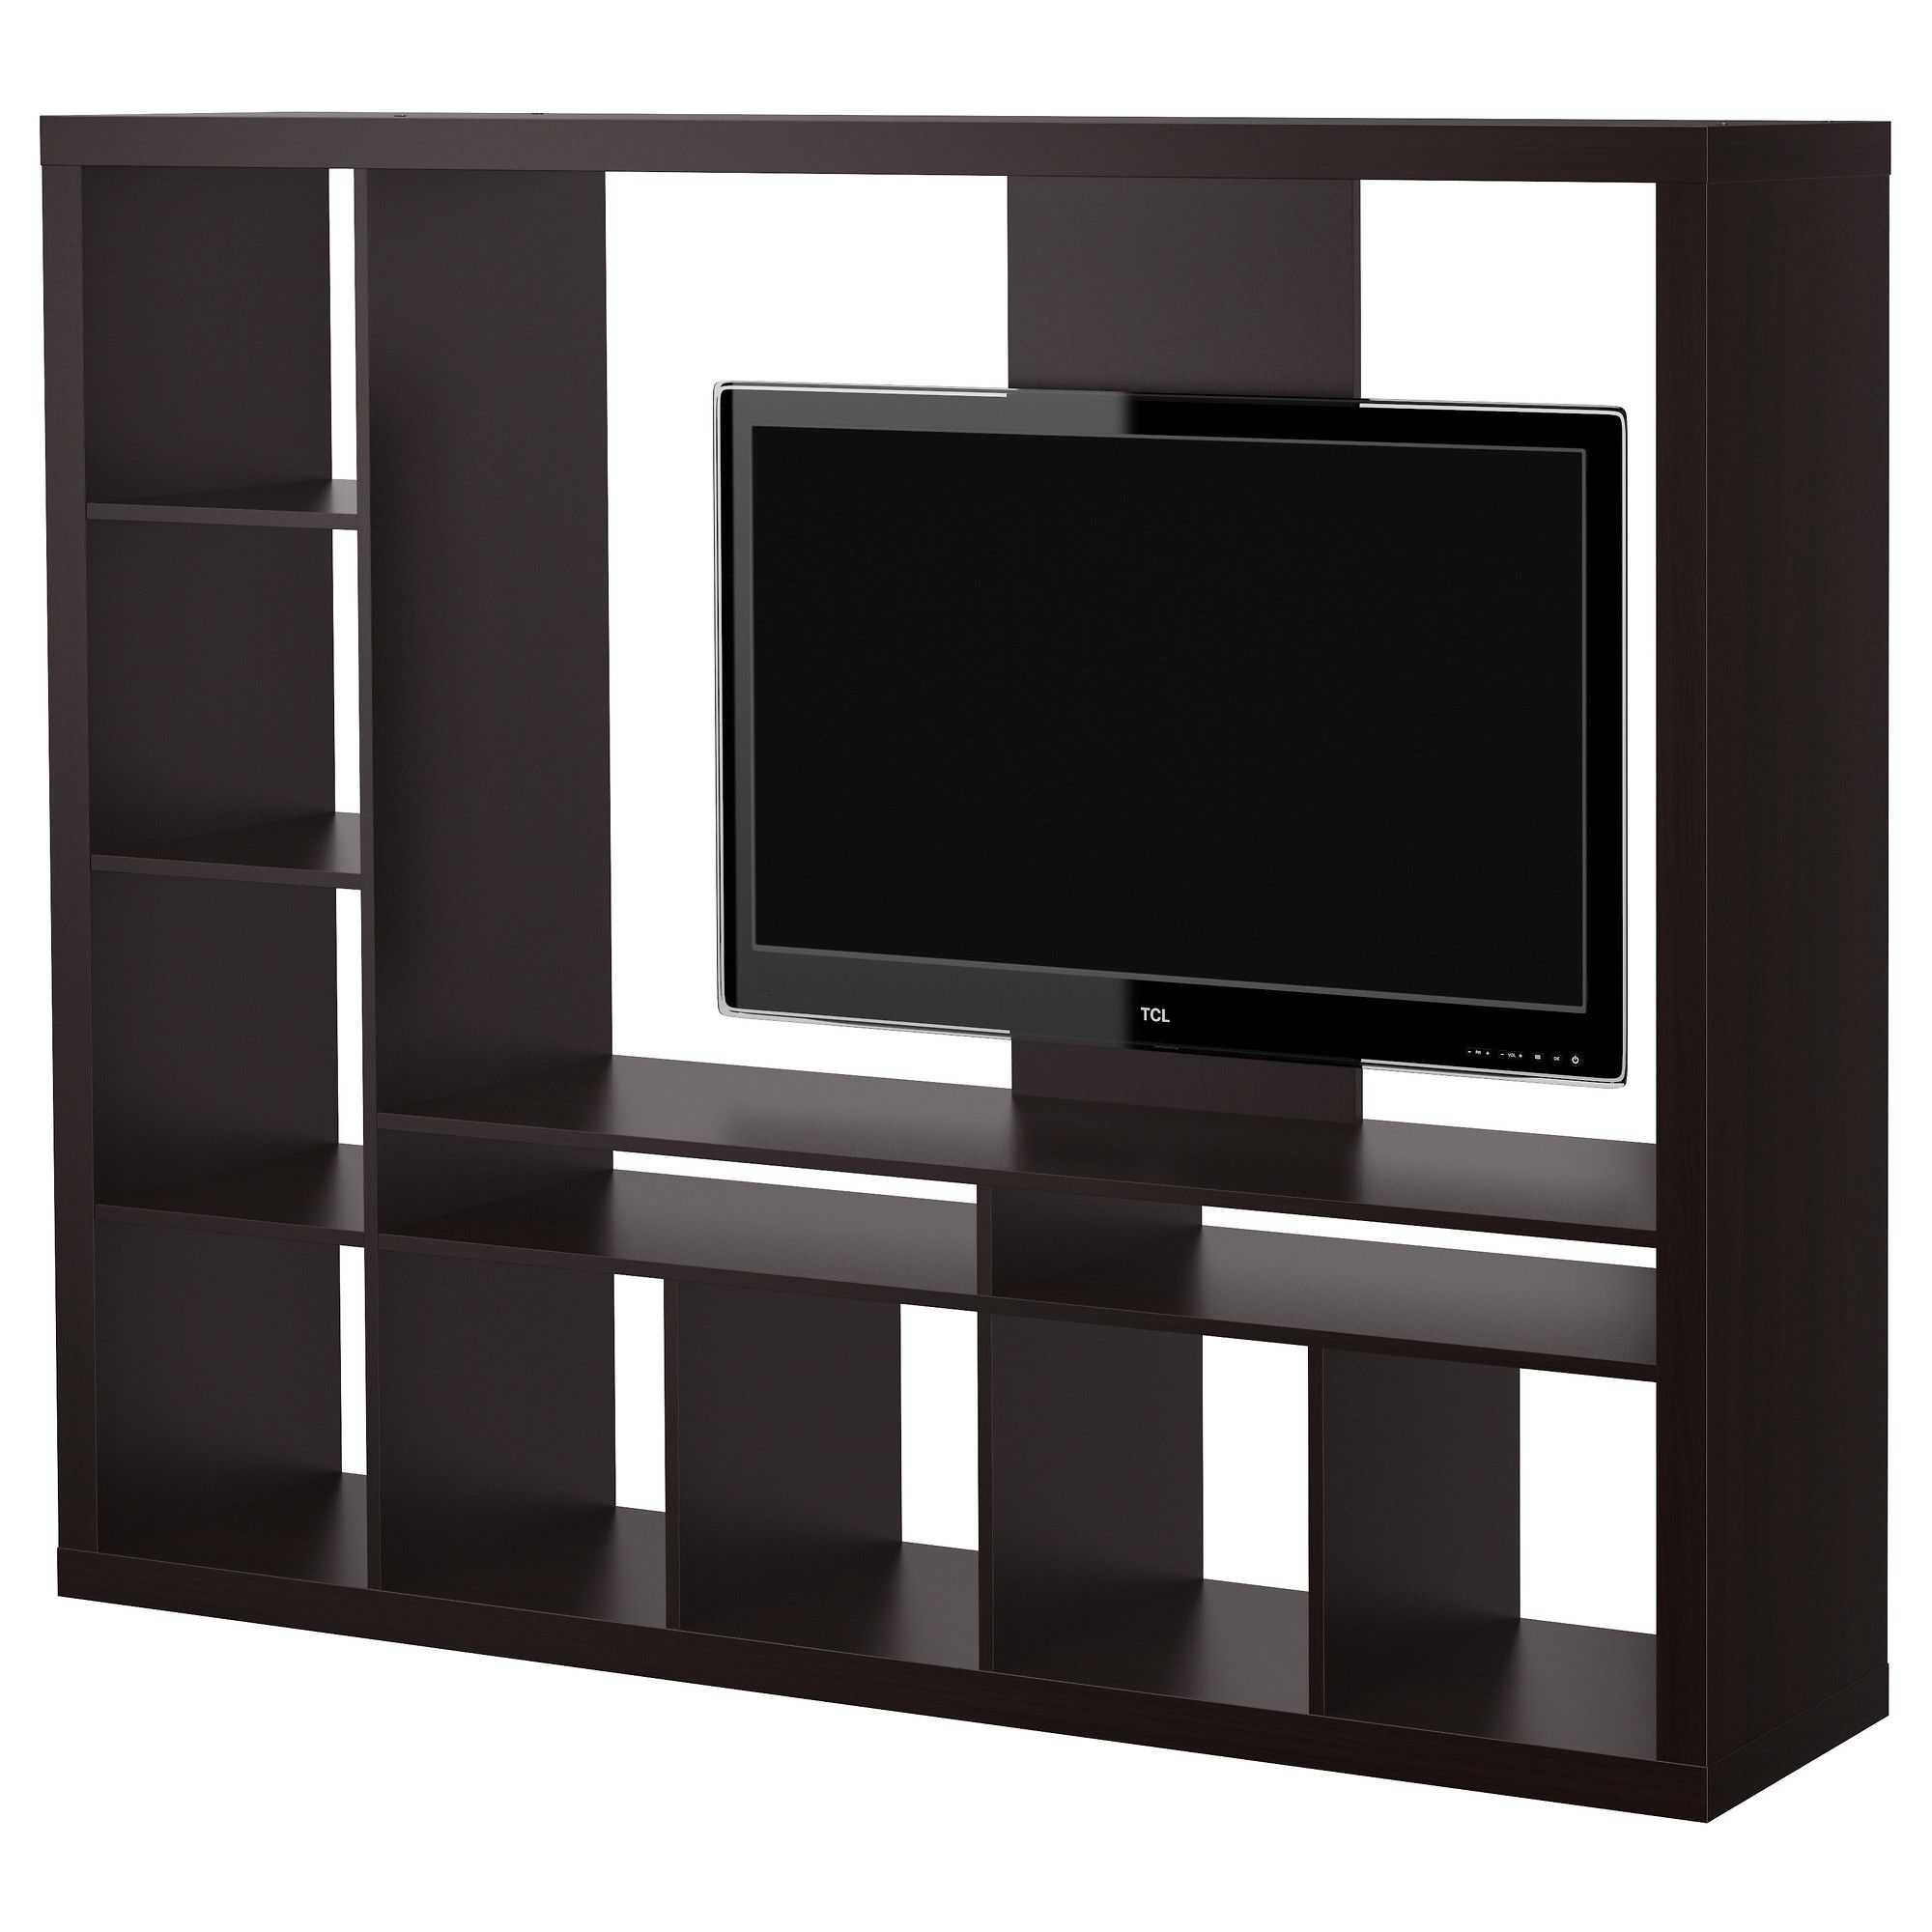 Стеллаж в гостиную (55 фото): красивые угловые модели в современном стиле для телевизора и книг в интерьере